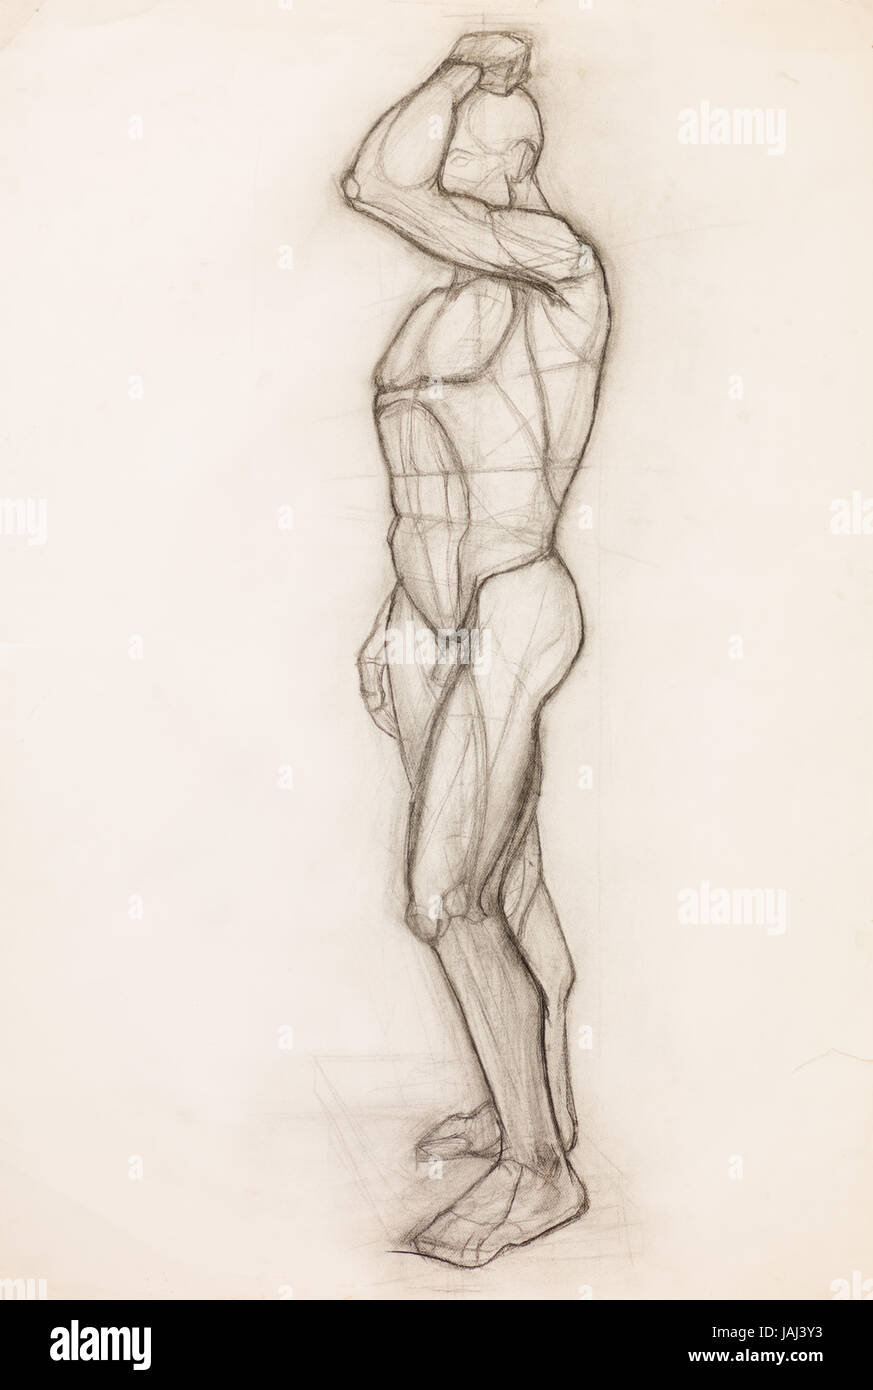 Dibujo a Lápiz dibujados a mano ilustrando los músculos del cuerpo humano  anatomía Fotografía de stock - Alamy